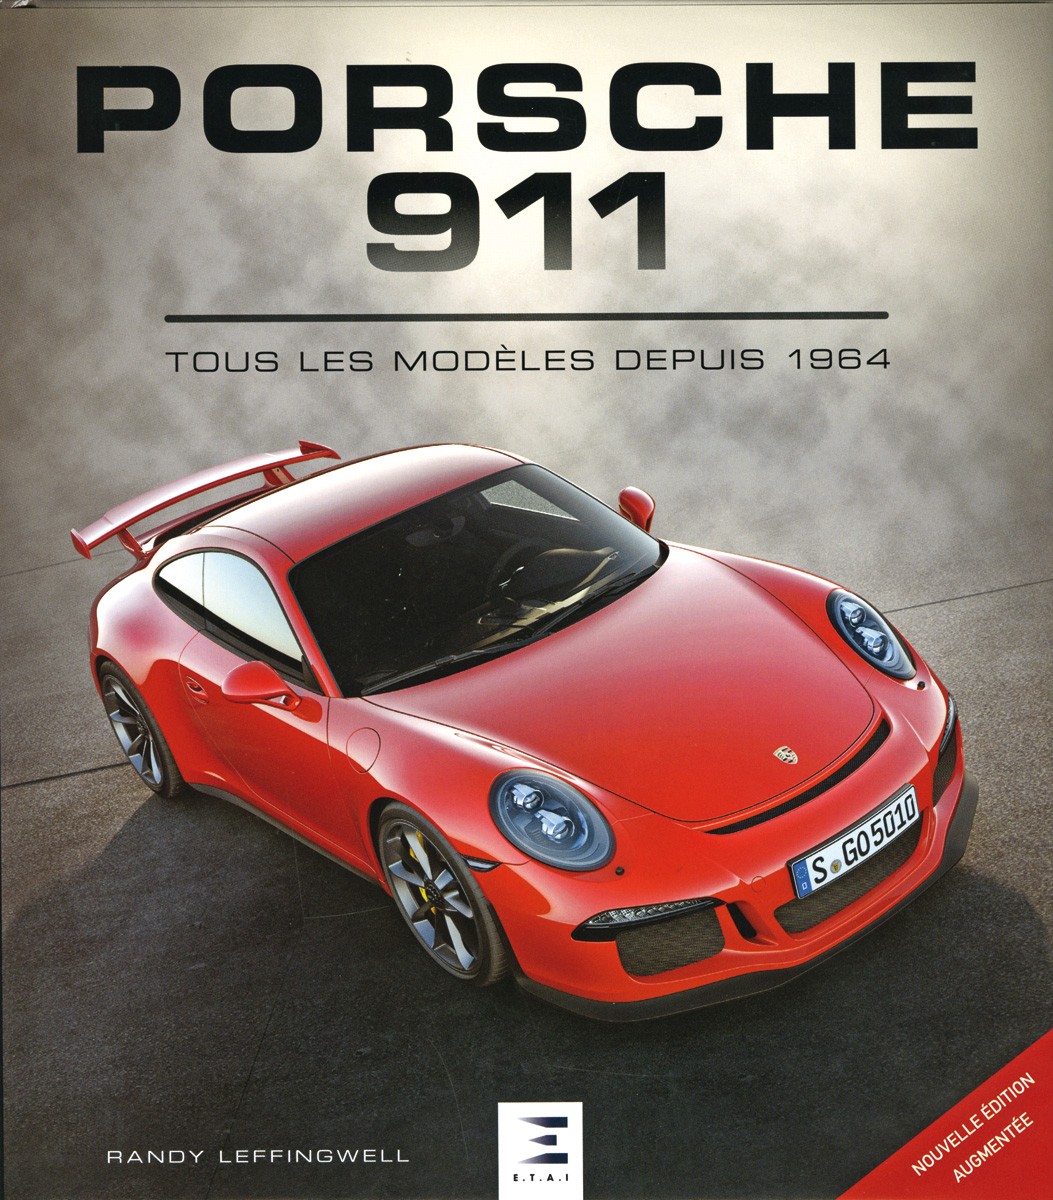 Porsche 911 tous les modèles depuis 1964 - Nouvelle édition